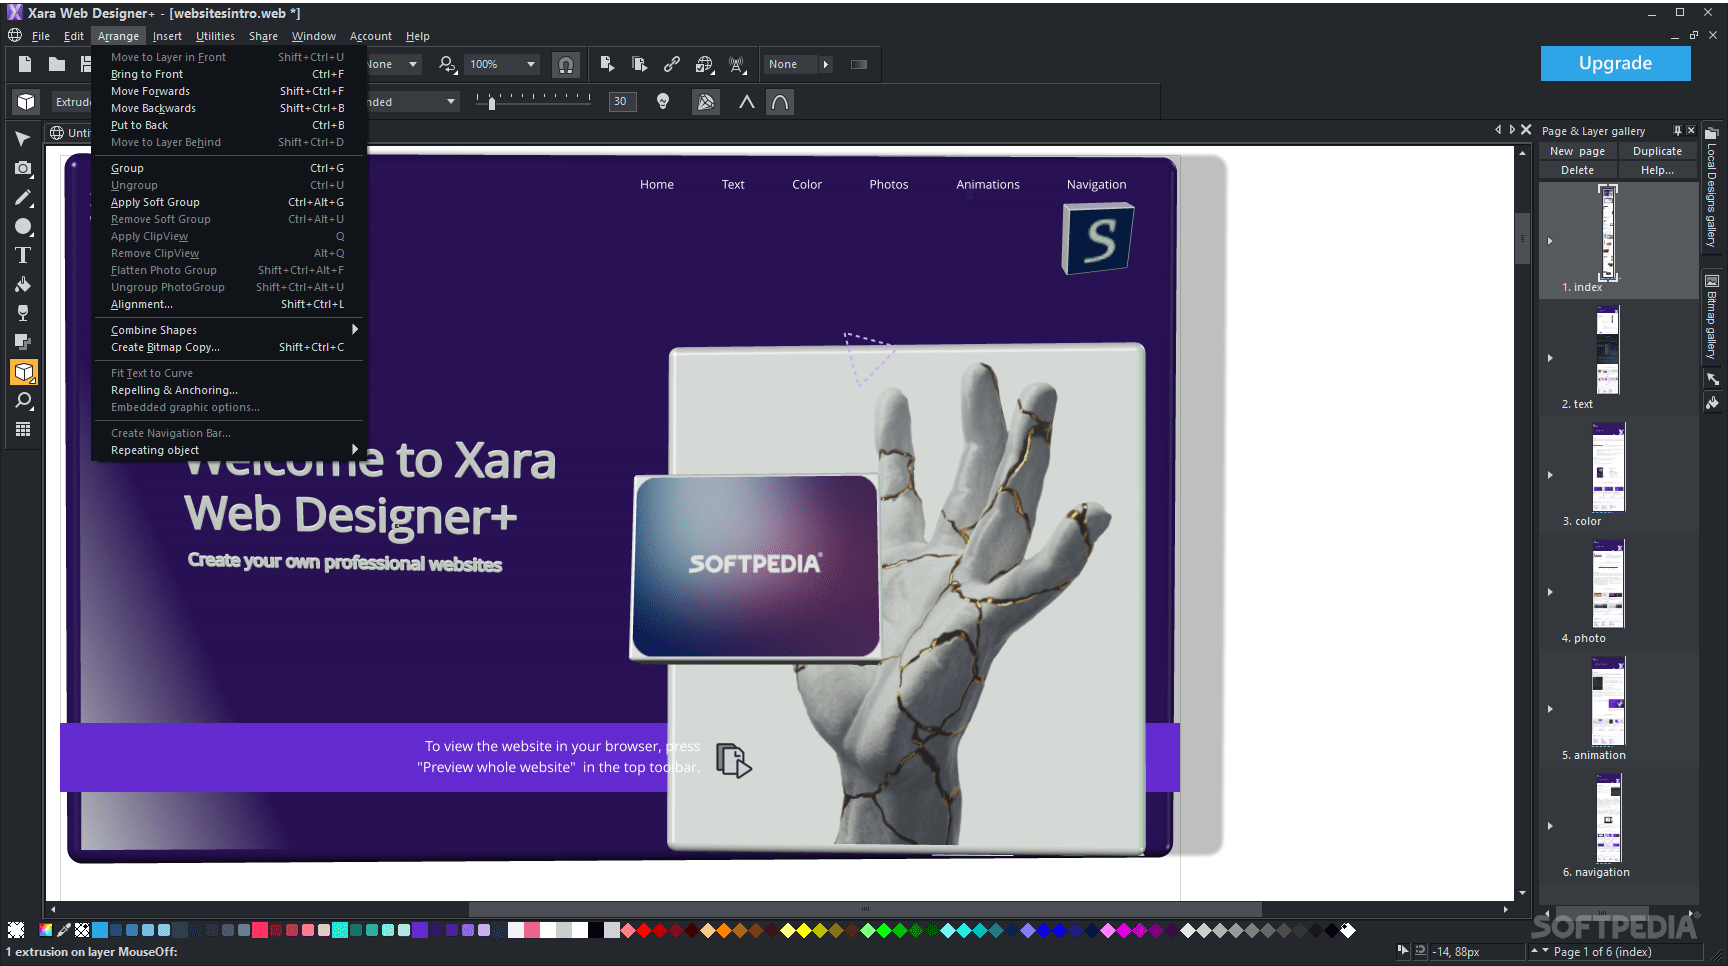 instaling Xara Web Designer Premium 23.2.0.67158